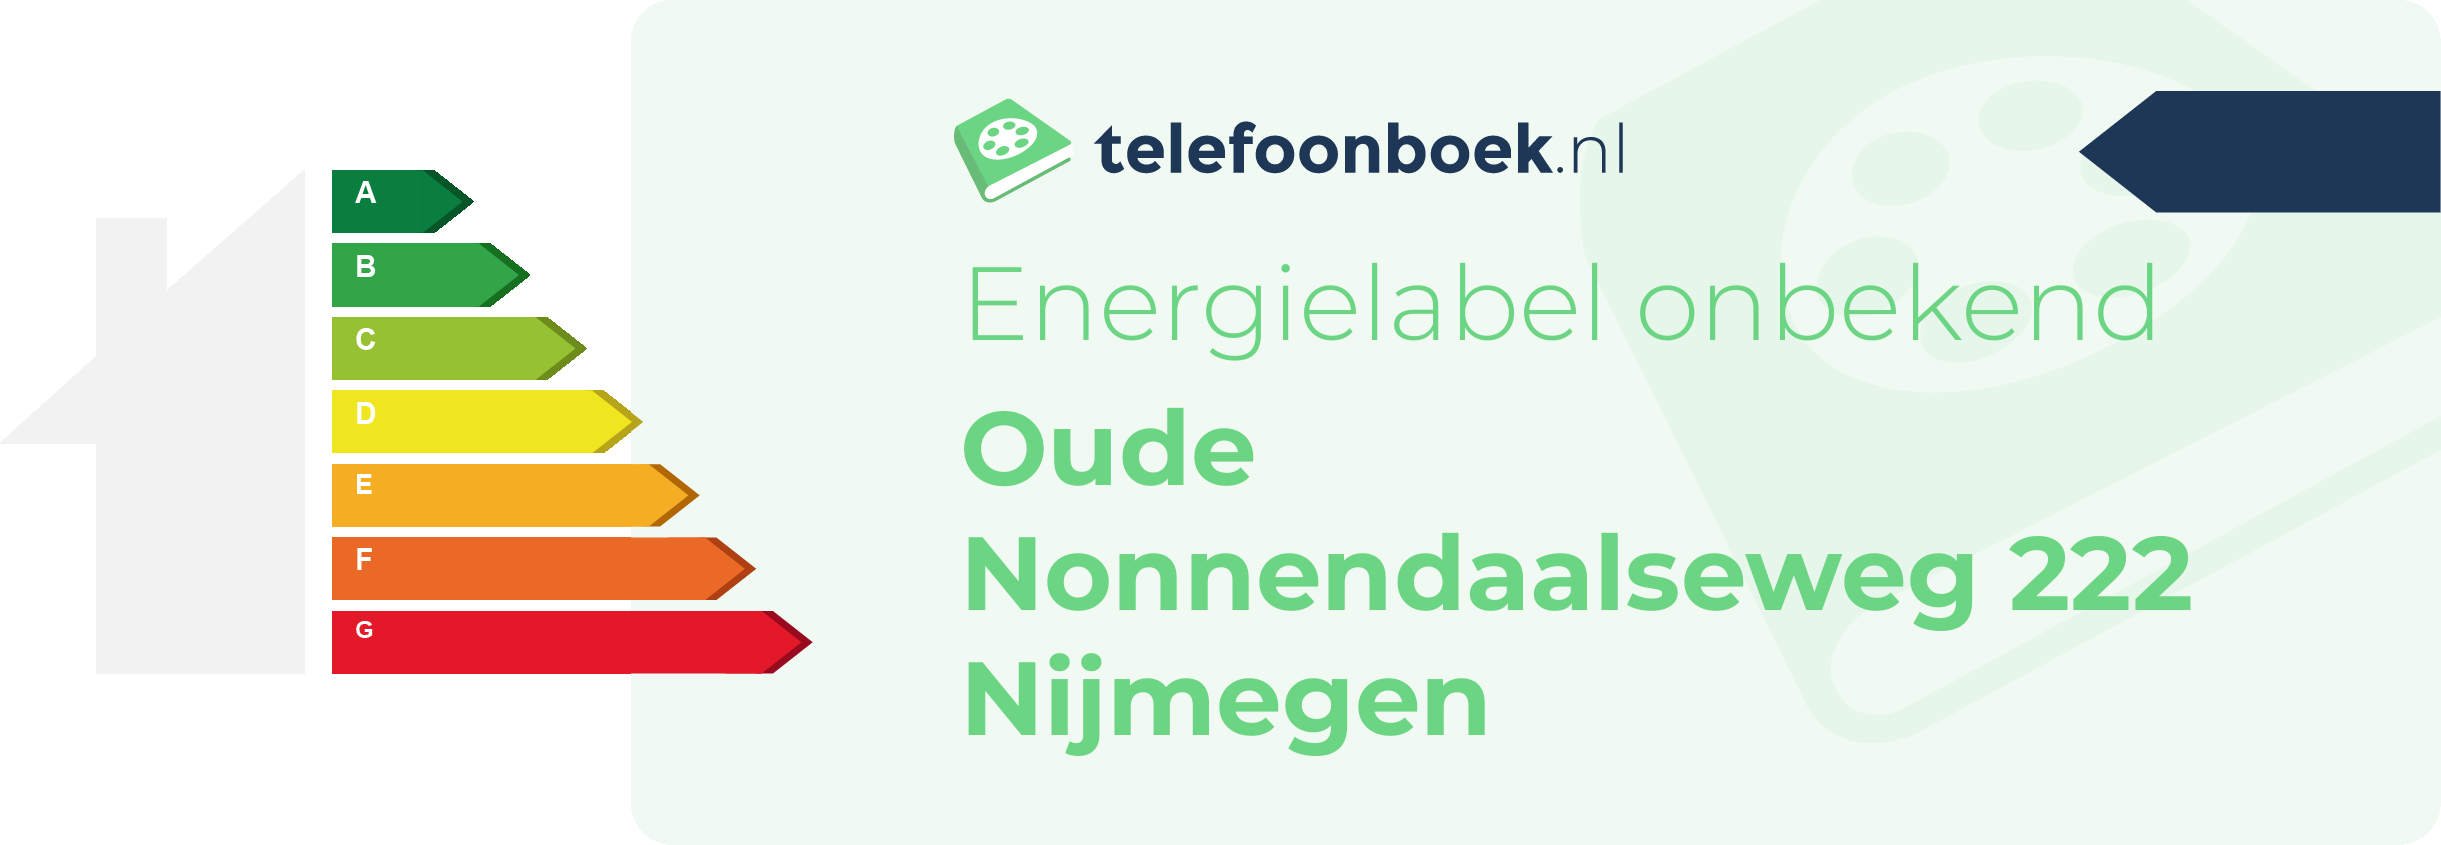 Energielabel Oude Nonnendaalseweg 222 Nijmegen